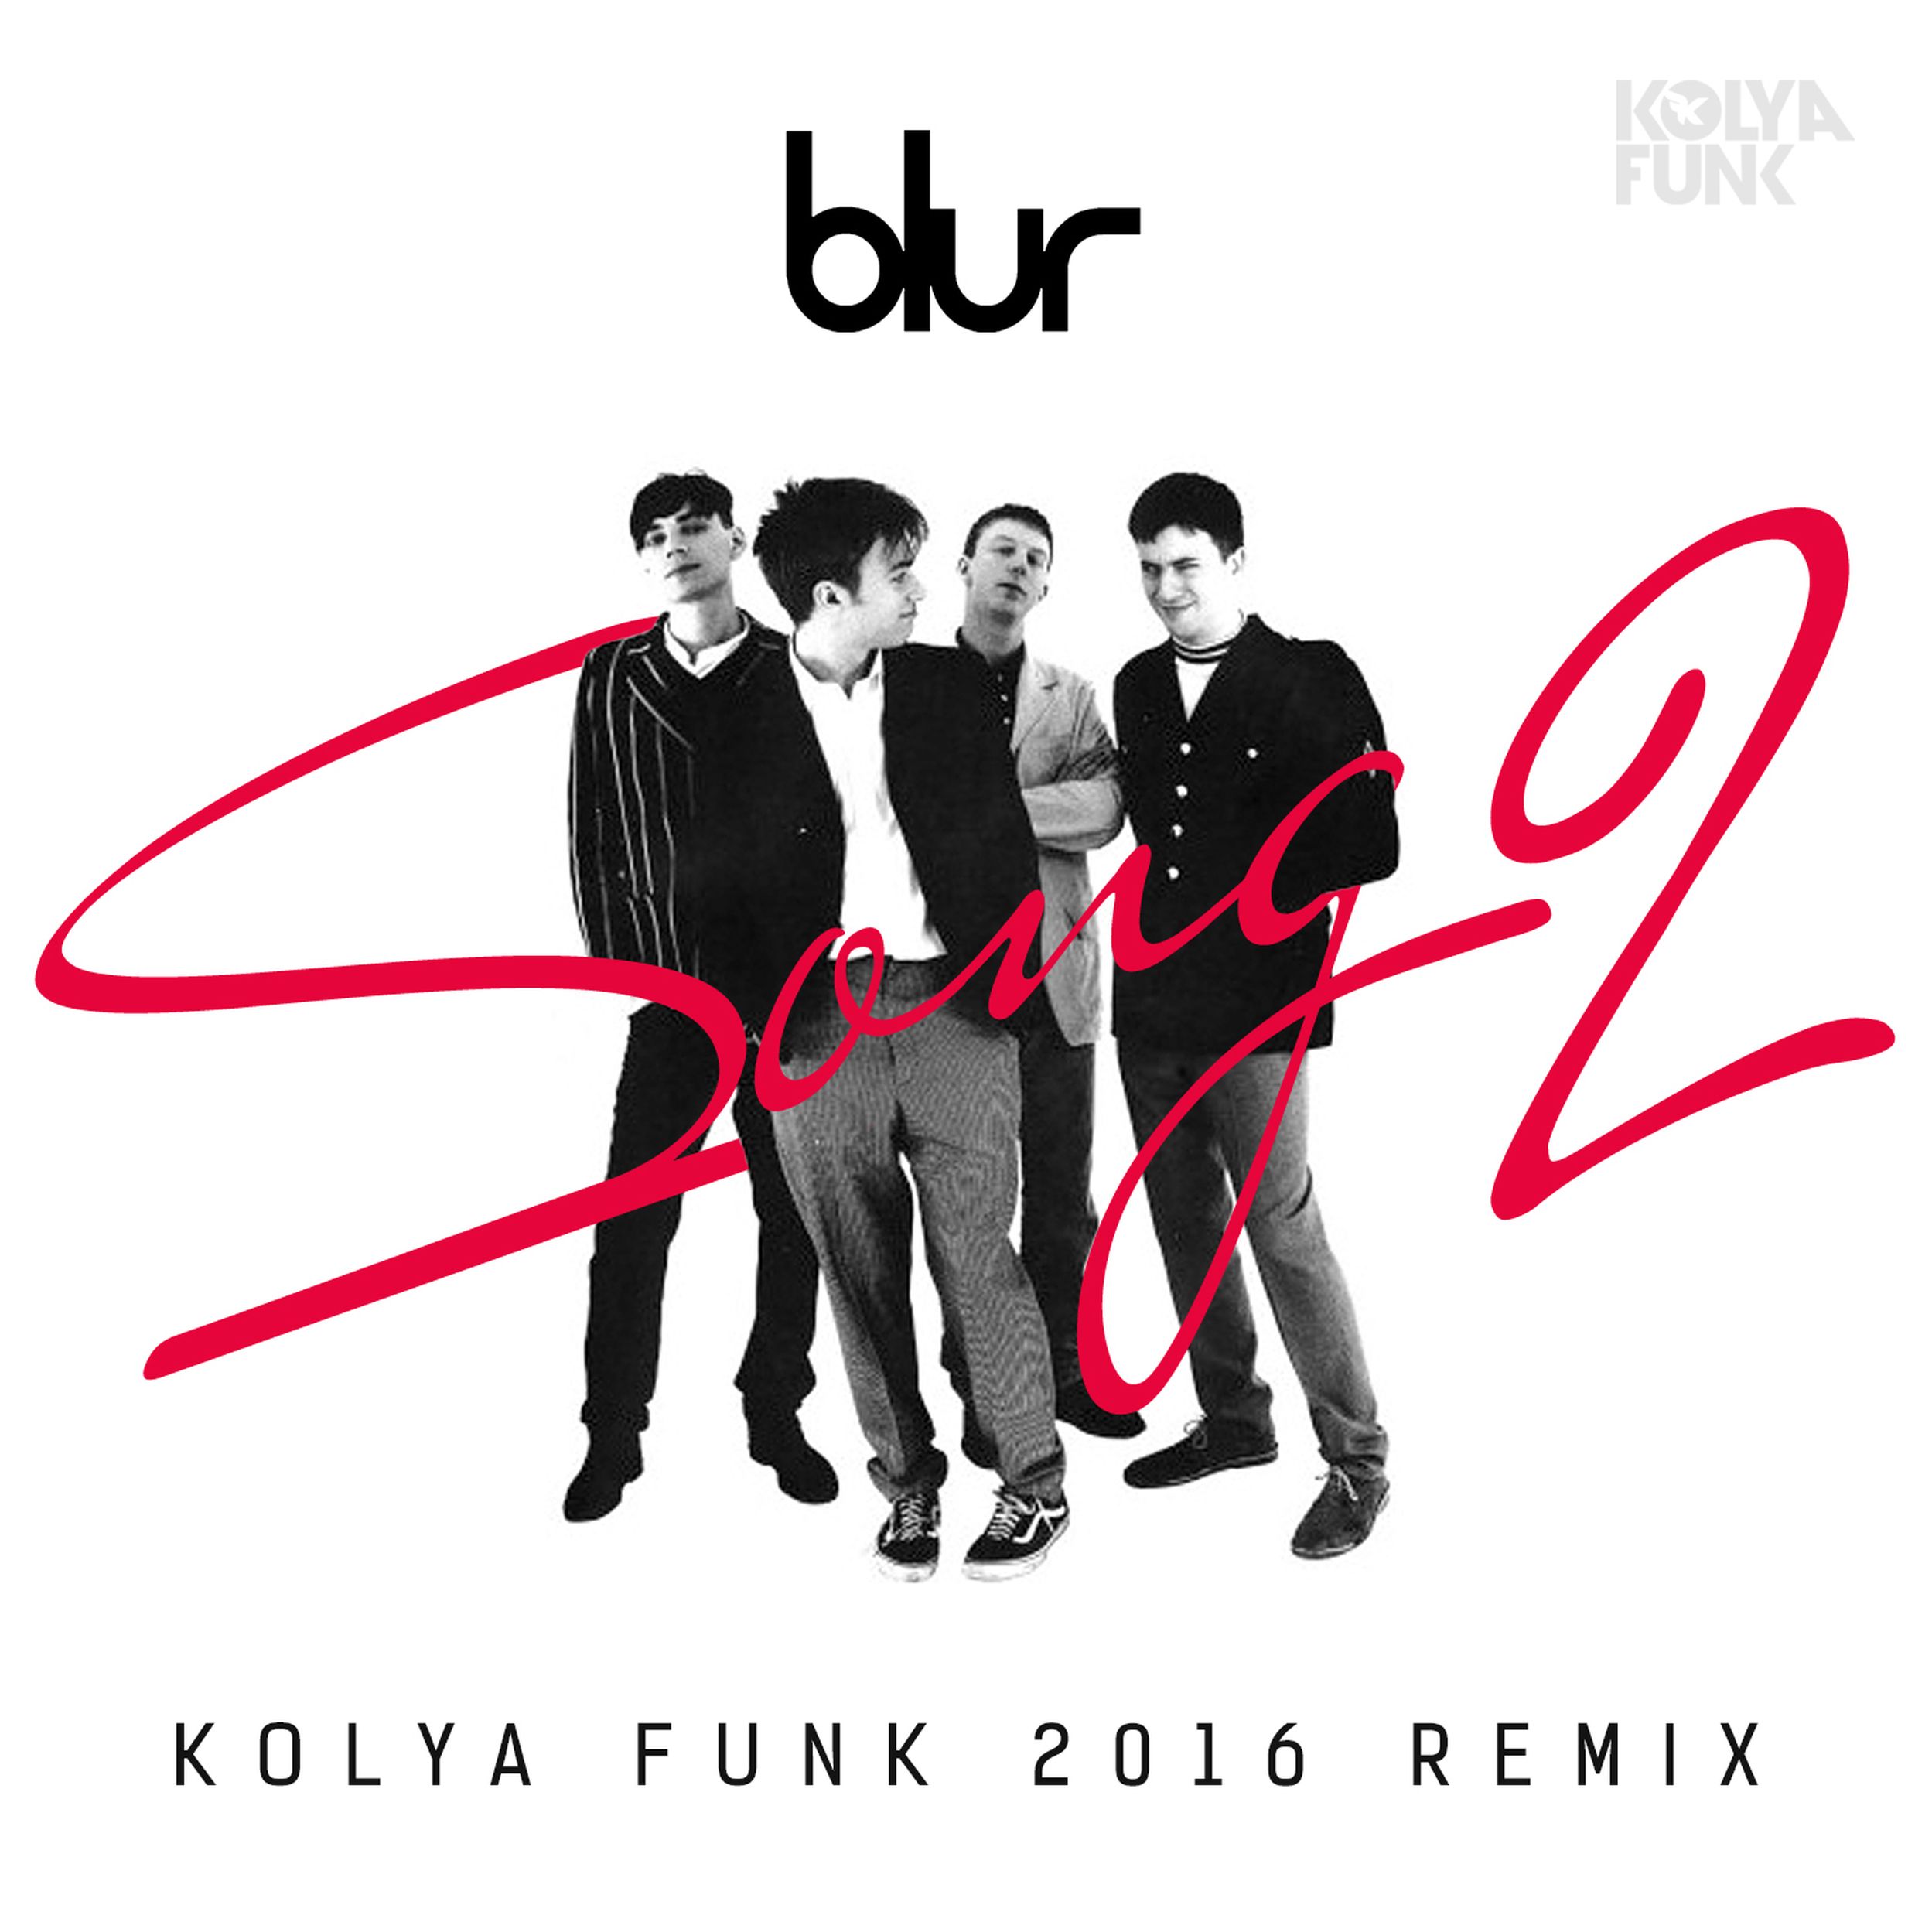 Музыка 2 3 часа. Блюр Сонг 2. Группа Blur Song 2. Blur Song. Song 2 2012 Remaster Blur.